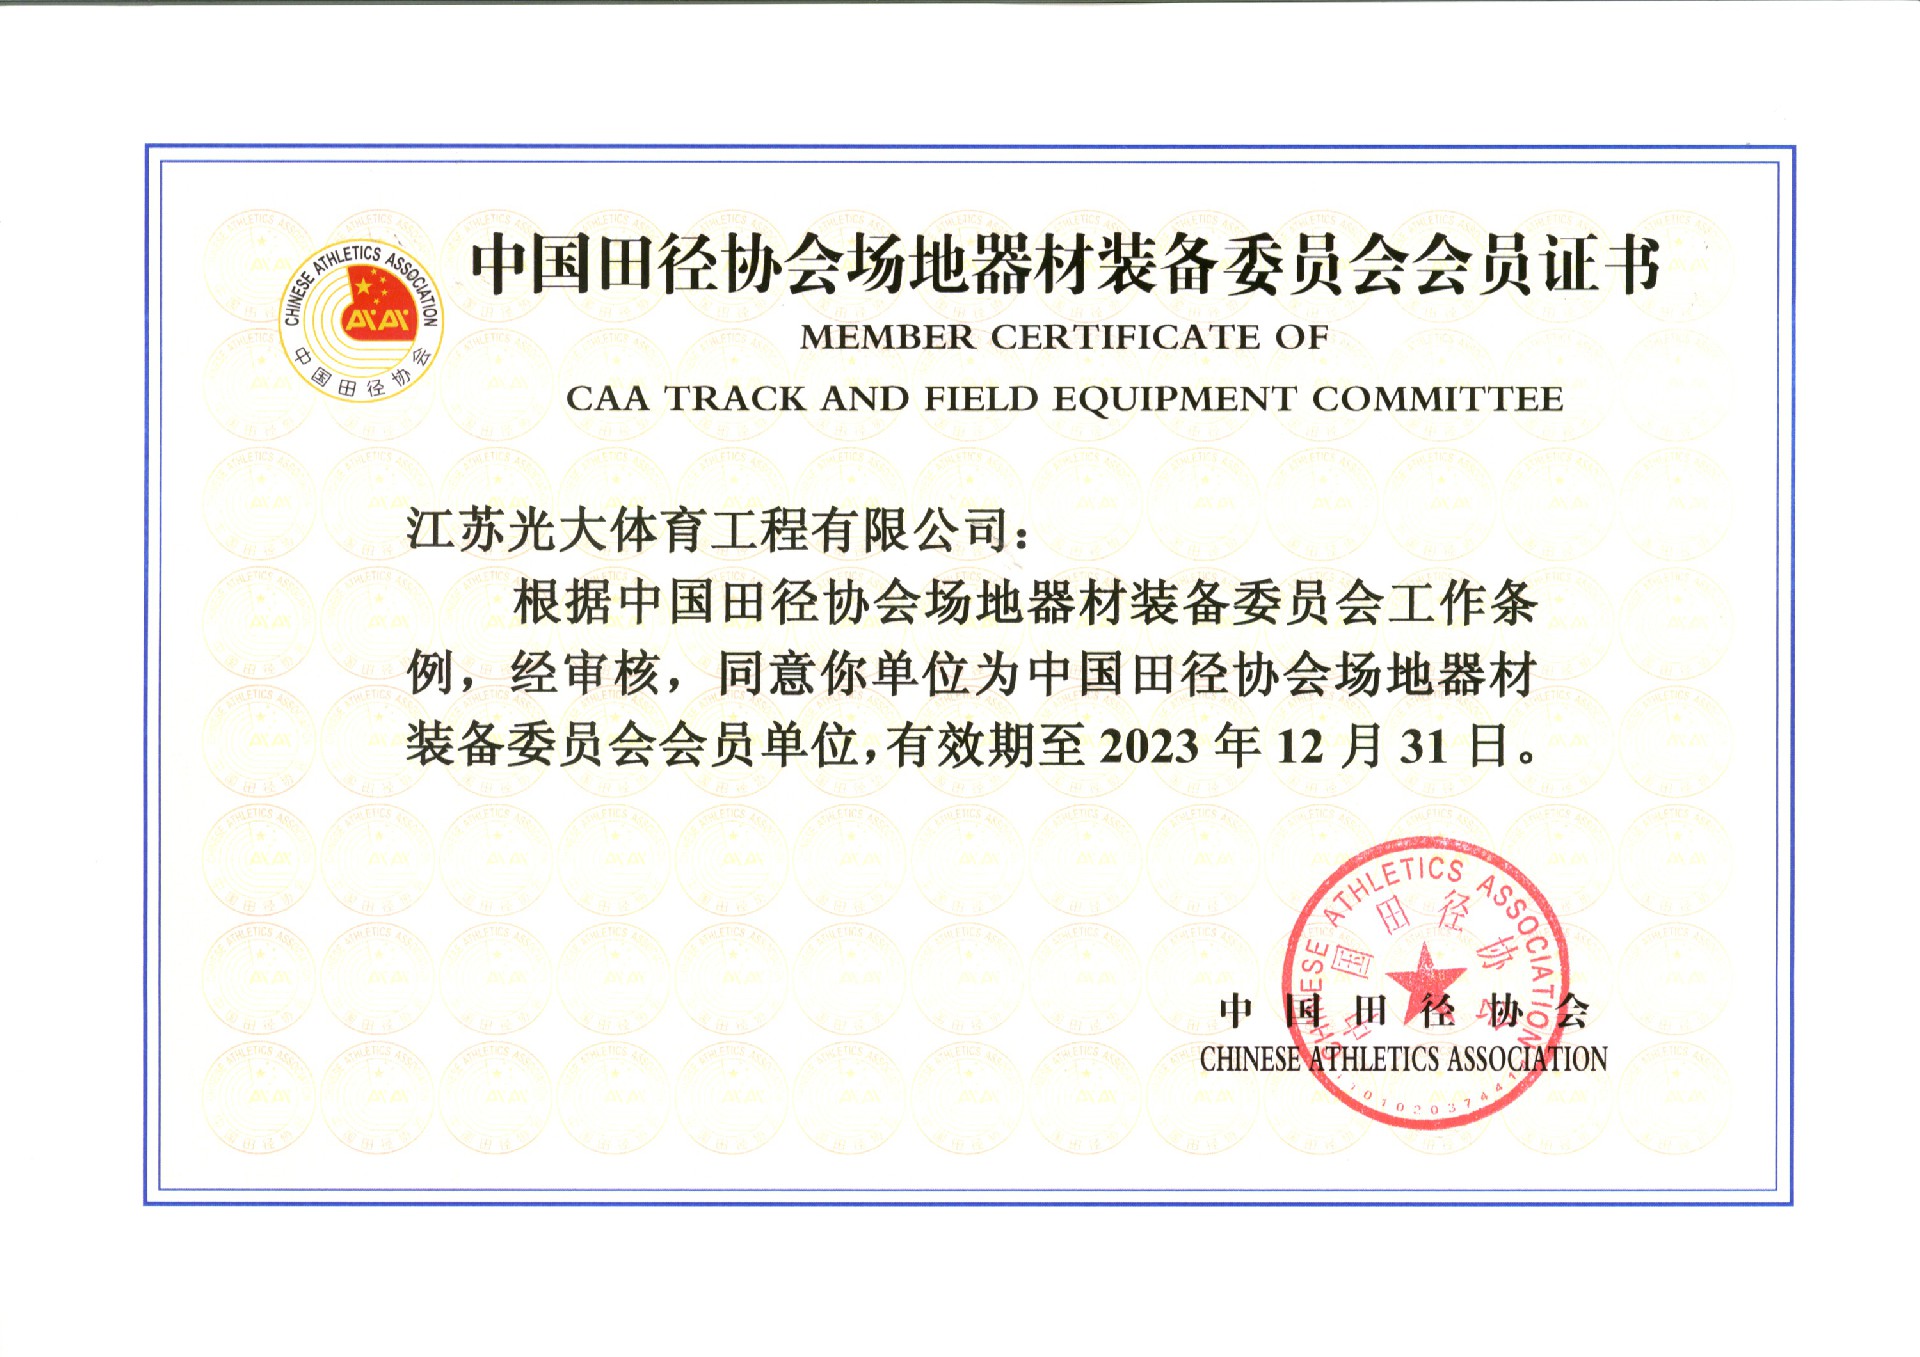 中国田径协会场地器材装备委员会会员证书.jpg